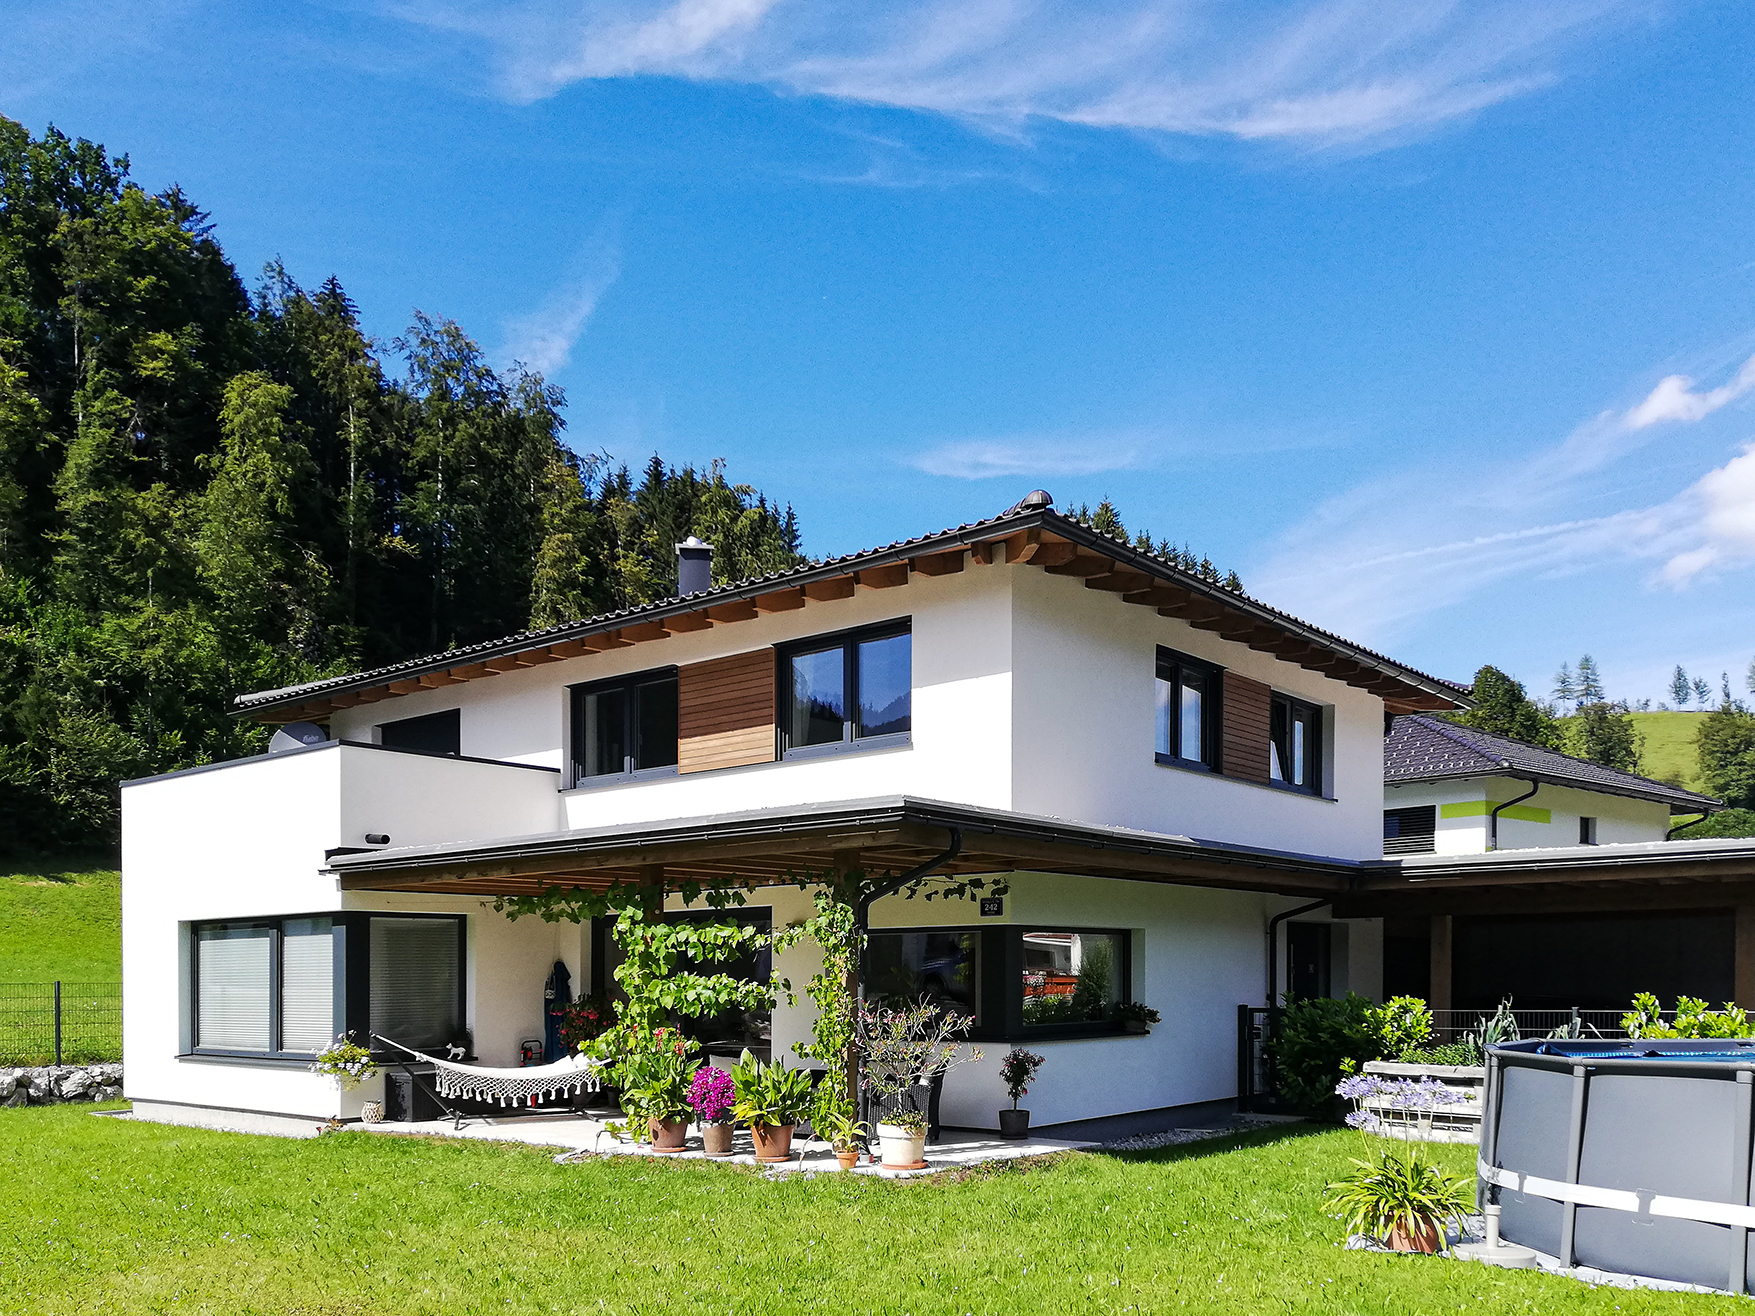 Einfamilienhaus mit überdachtem PKW-Abstellplatz in Göstling an der Ybbs. Hausplanung durch EcoConcept Planungs GmbH aus Lunz am See, Niederösterreich